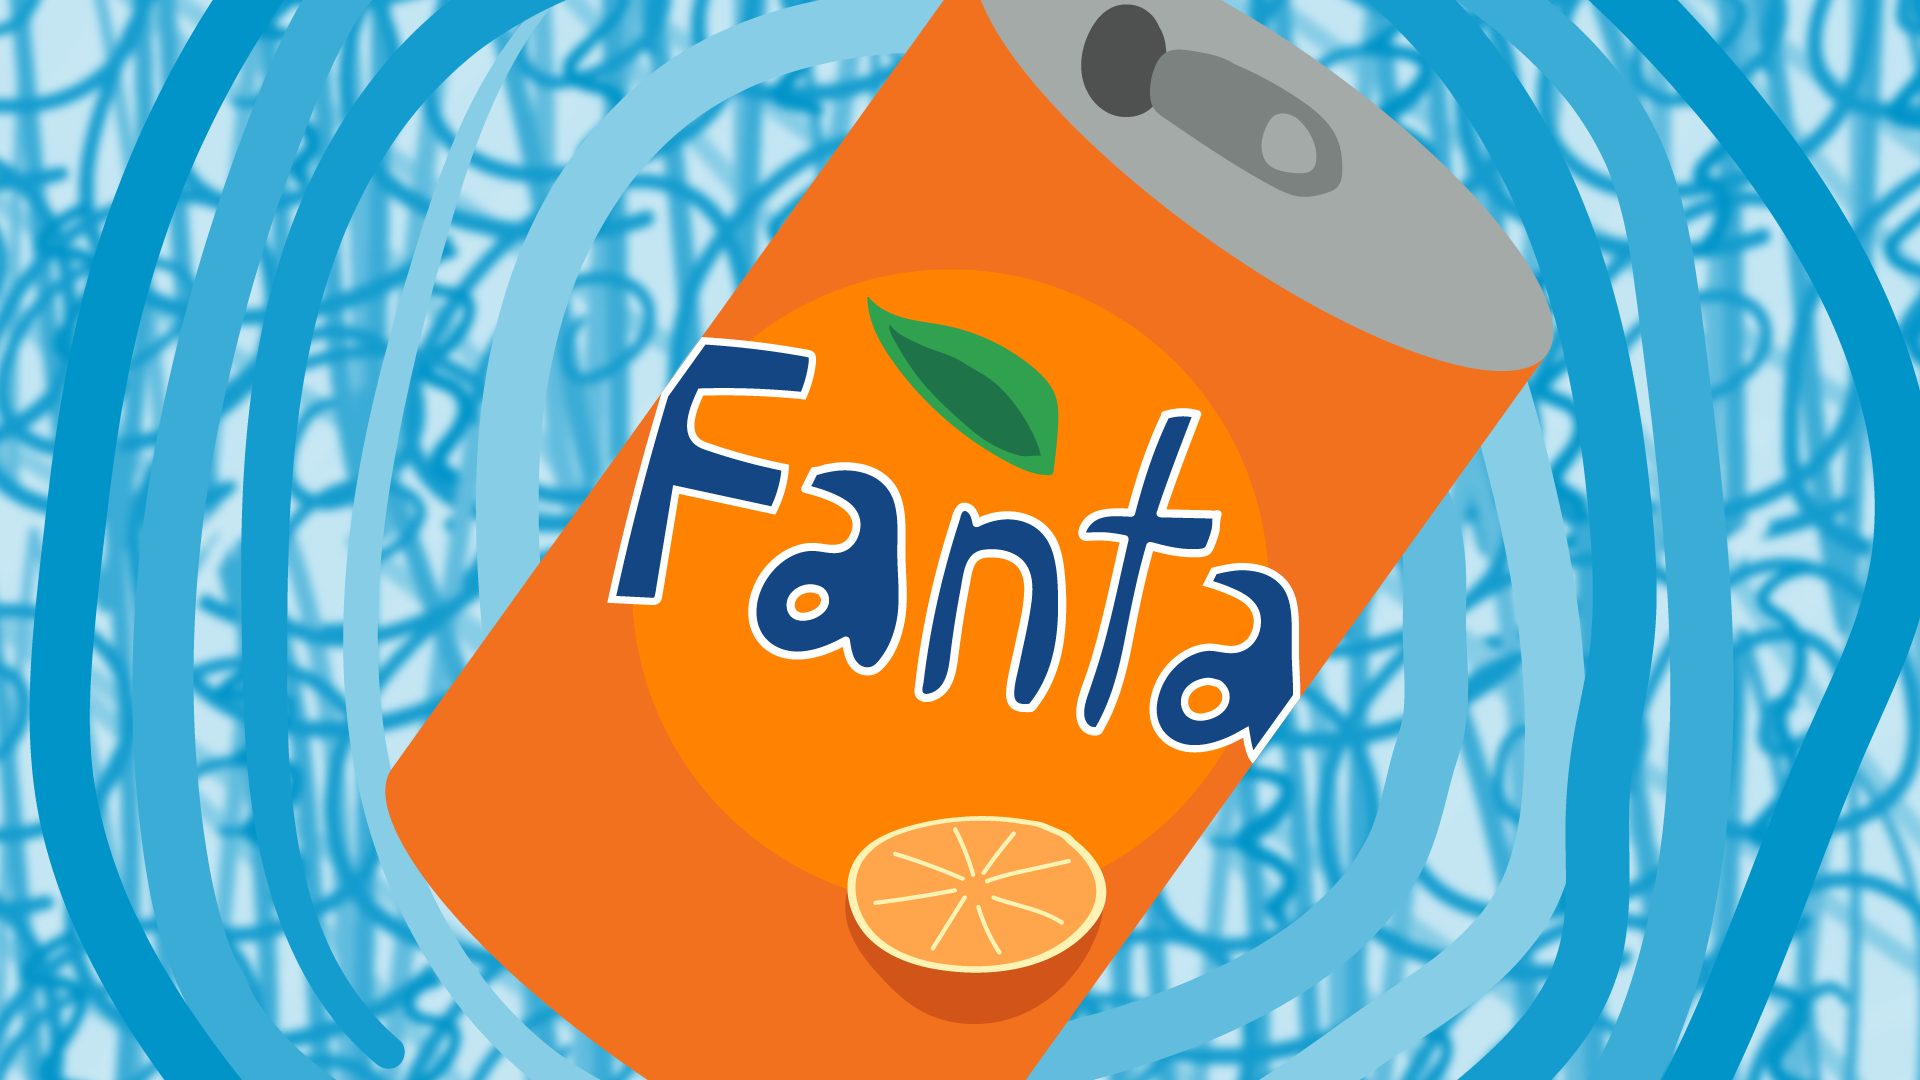 It’s Fanta, not Fanta